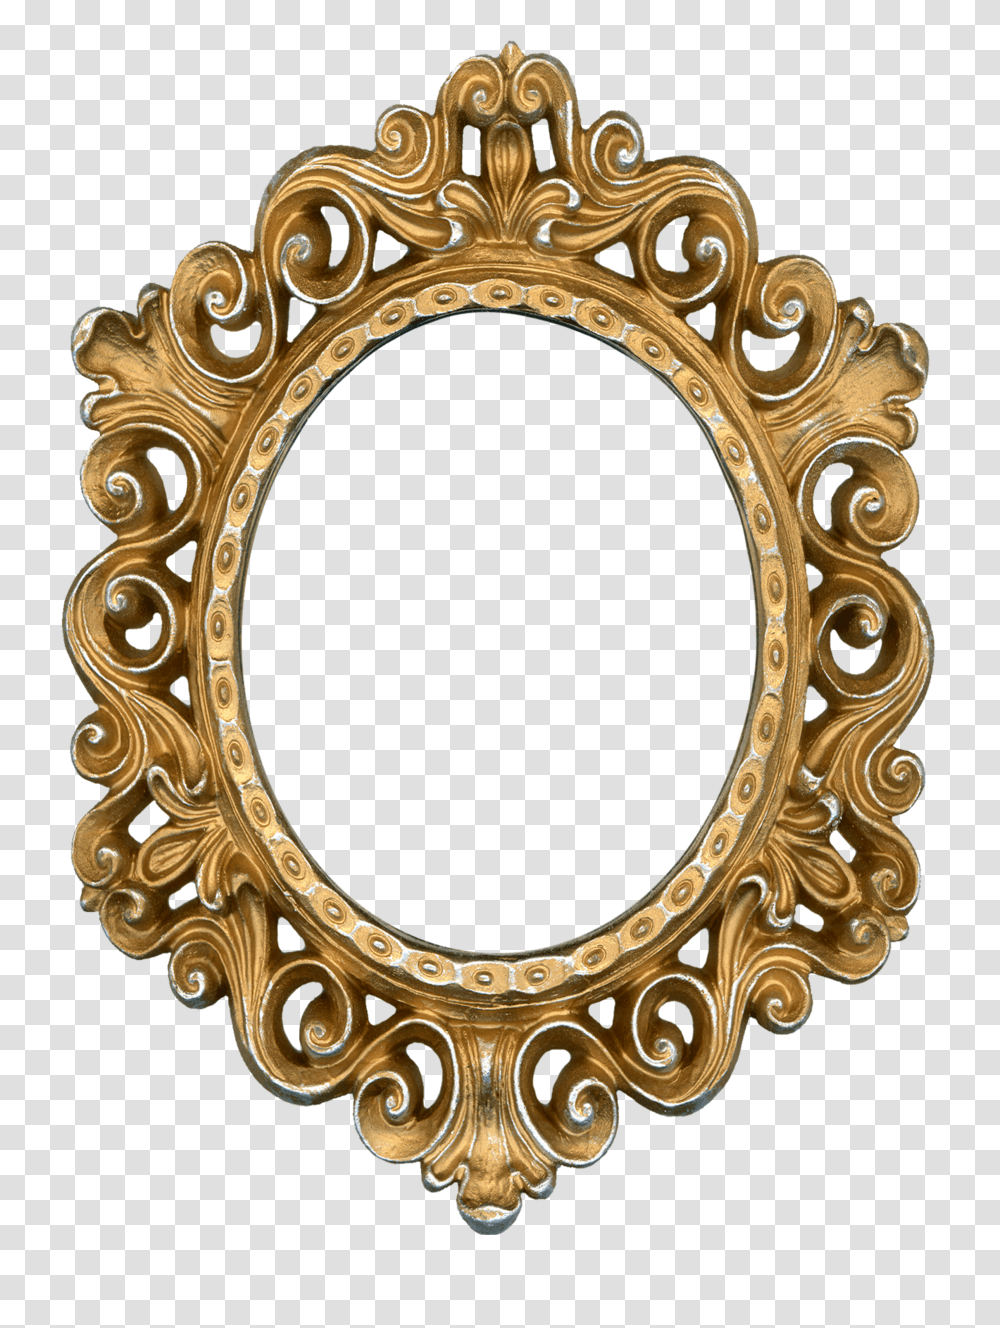 Moldura Para Espelho Show Glass, Gate, Oval, Gold, Mirror Transparent Png